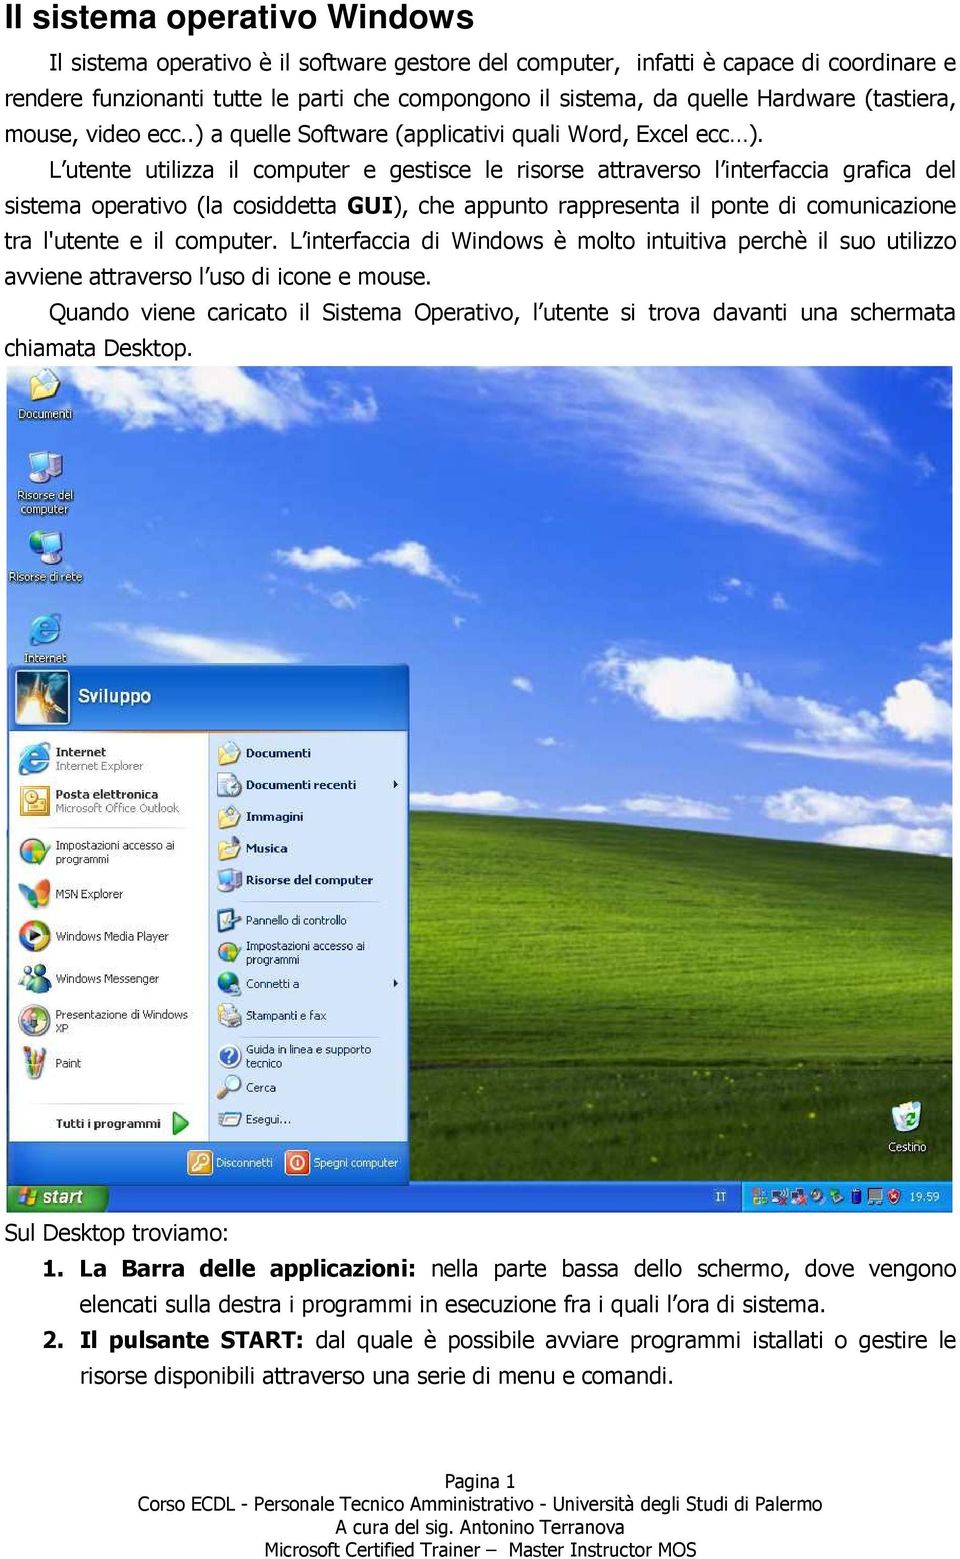 L utente utilizza il computer e gestisce le risorse attraverso l interfaccia grafica del sistema operativo (la cosiddetta GUI), che appunto rappresenta il ponte di comunicazione tra l'utente e il